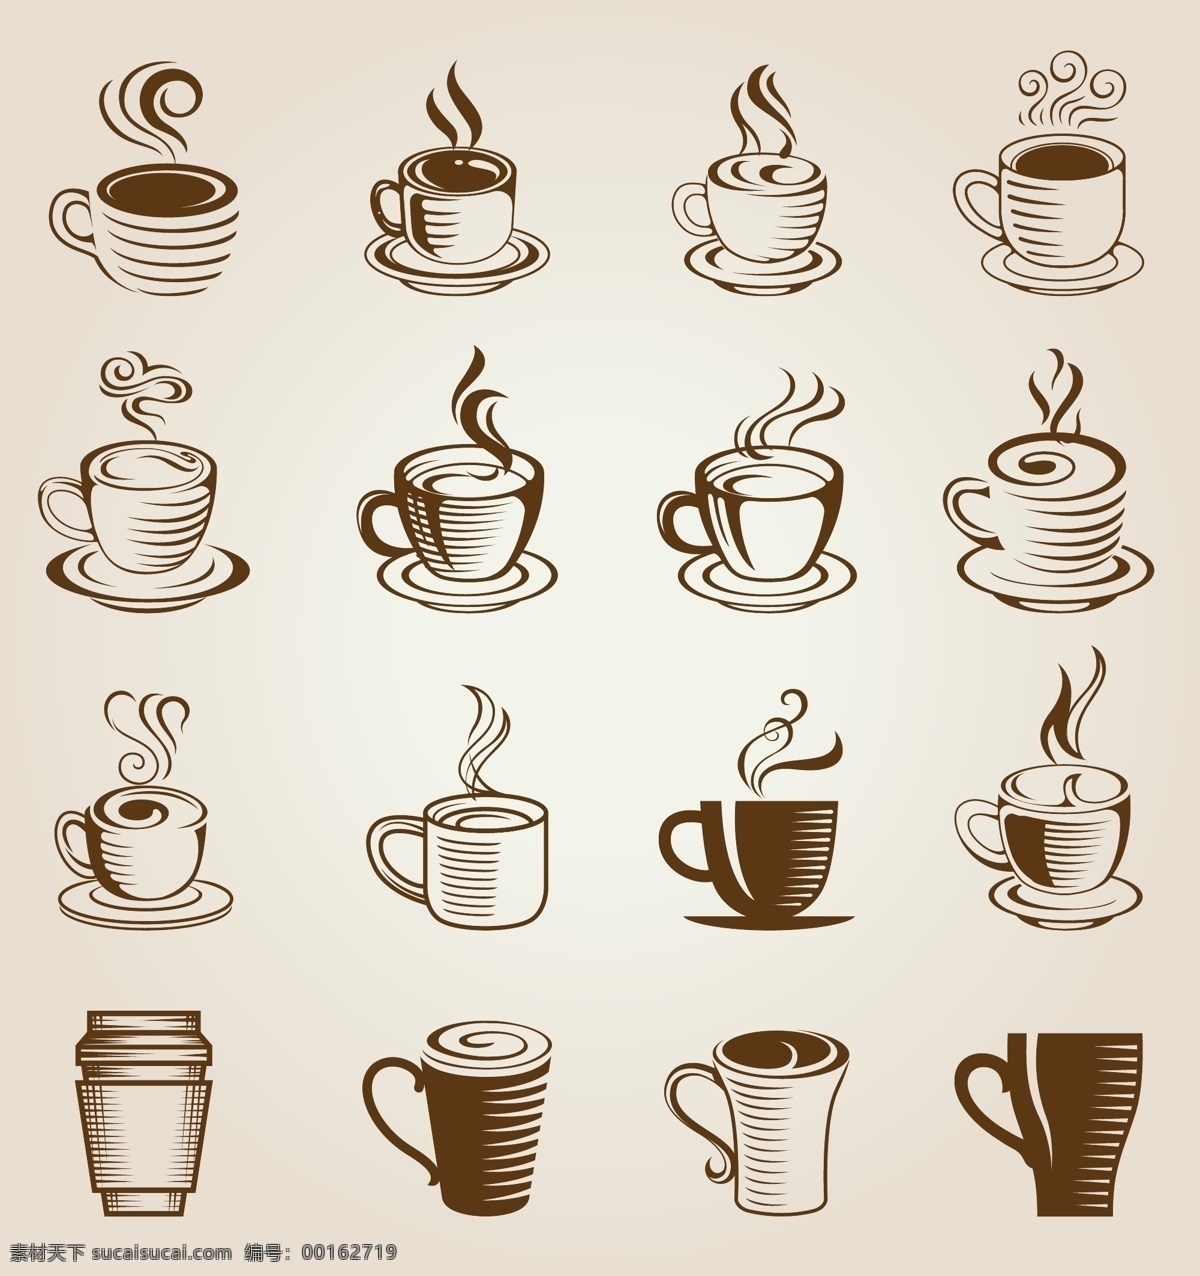 矢量 咖啡 图标 插画 矢量咖啡 扁平化设计 咖啡杯 奶茶 剪影 饮料 西餐餐具插画 原创 共享 卡通 标志图标 其他图标